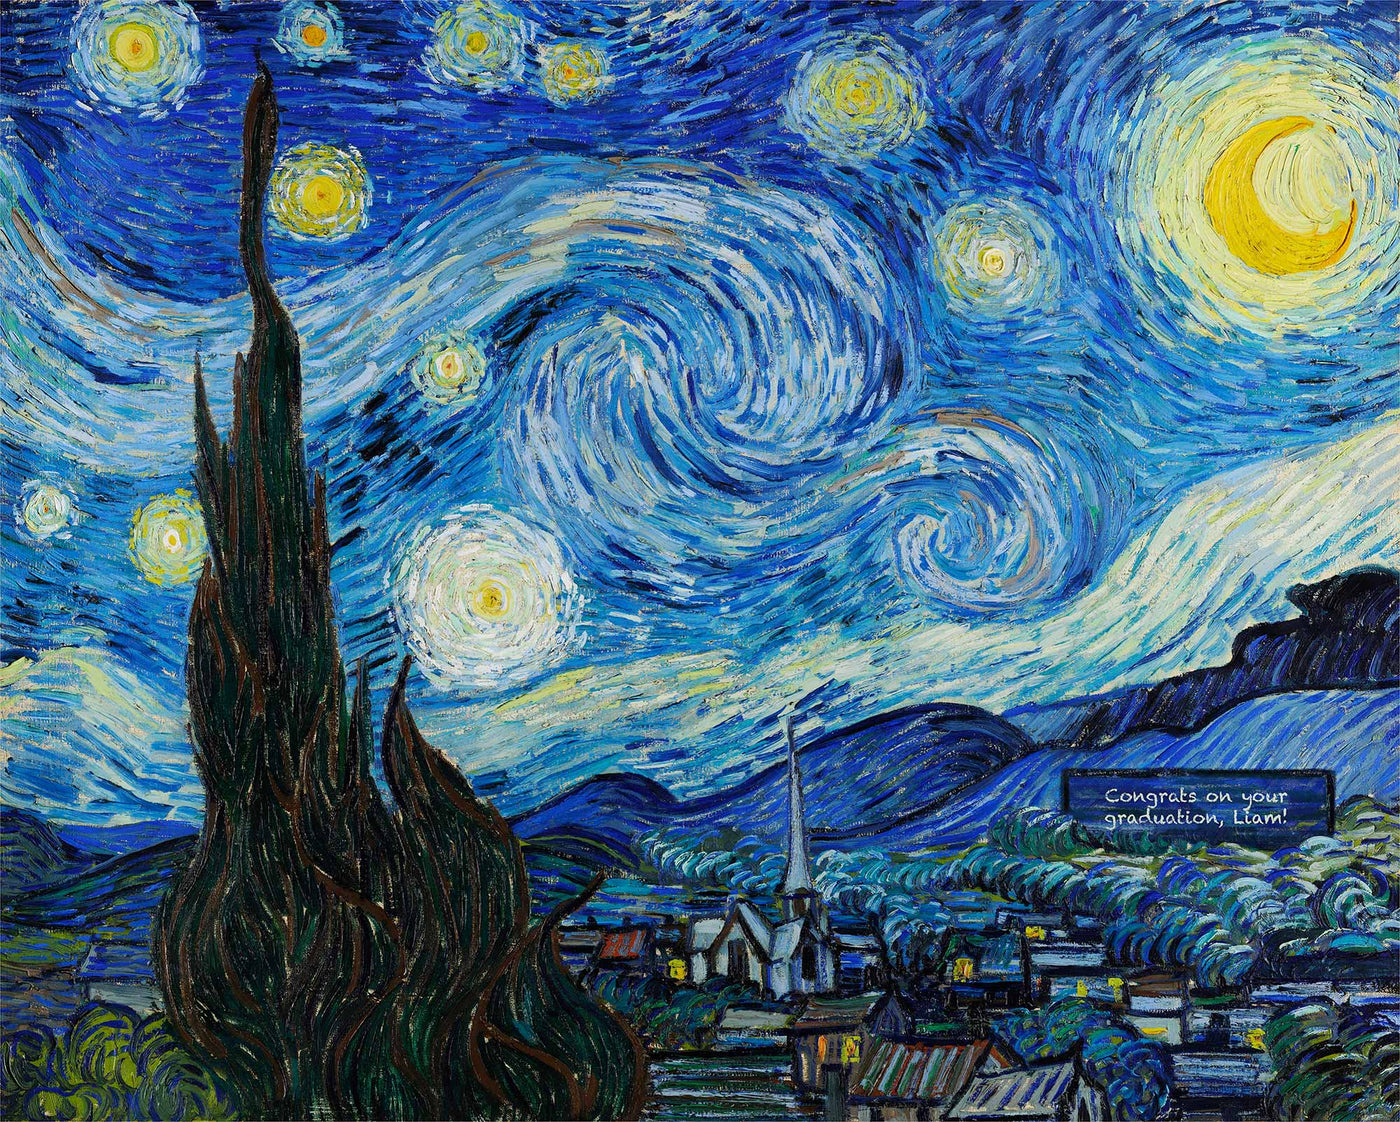 La noche estrellada de Vincent van Gogh, 1889 - Arte personalizado